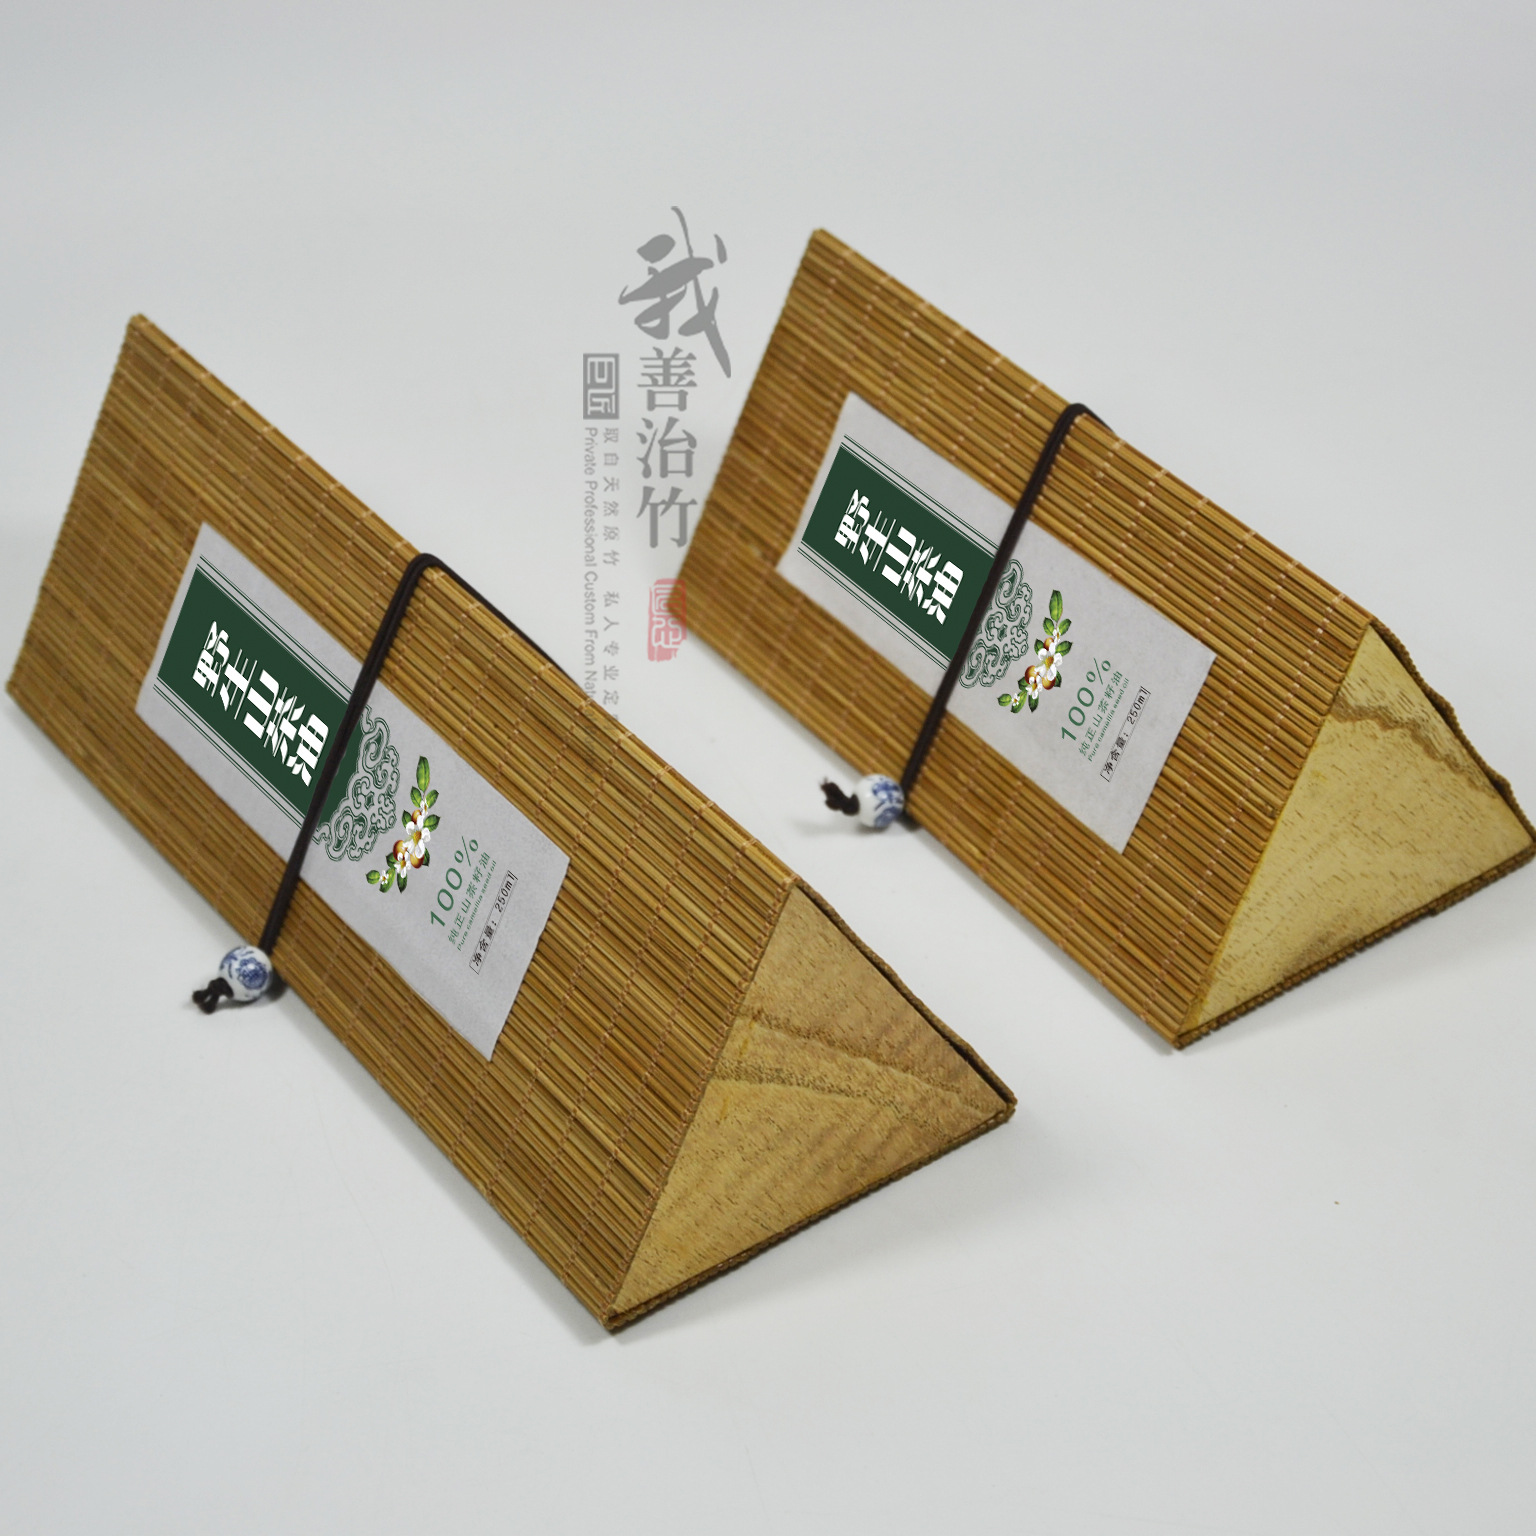 厂家批发三角竹丝盒 竹帘盒 竹编盒 寿司盒 茶叶盒 竹包装 定制